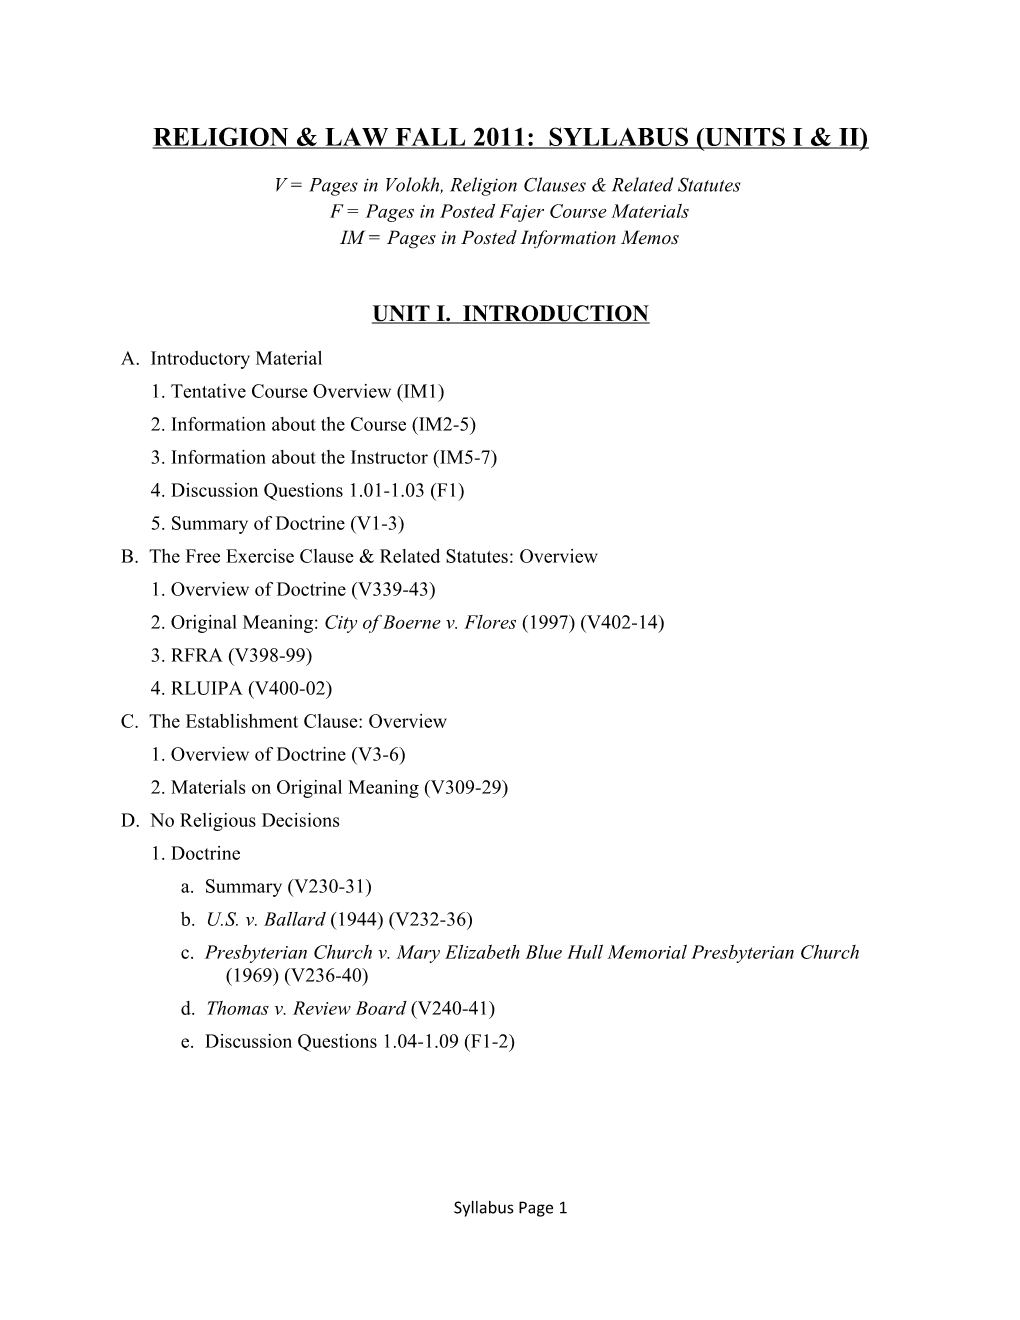 Religion & Law Fall 2011: Syllabus (Units I & Ii)